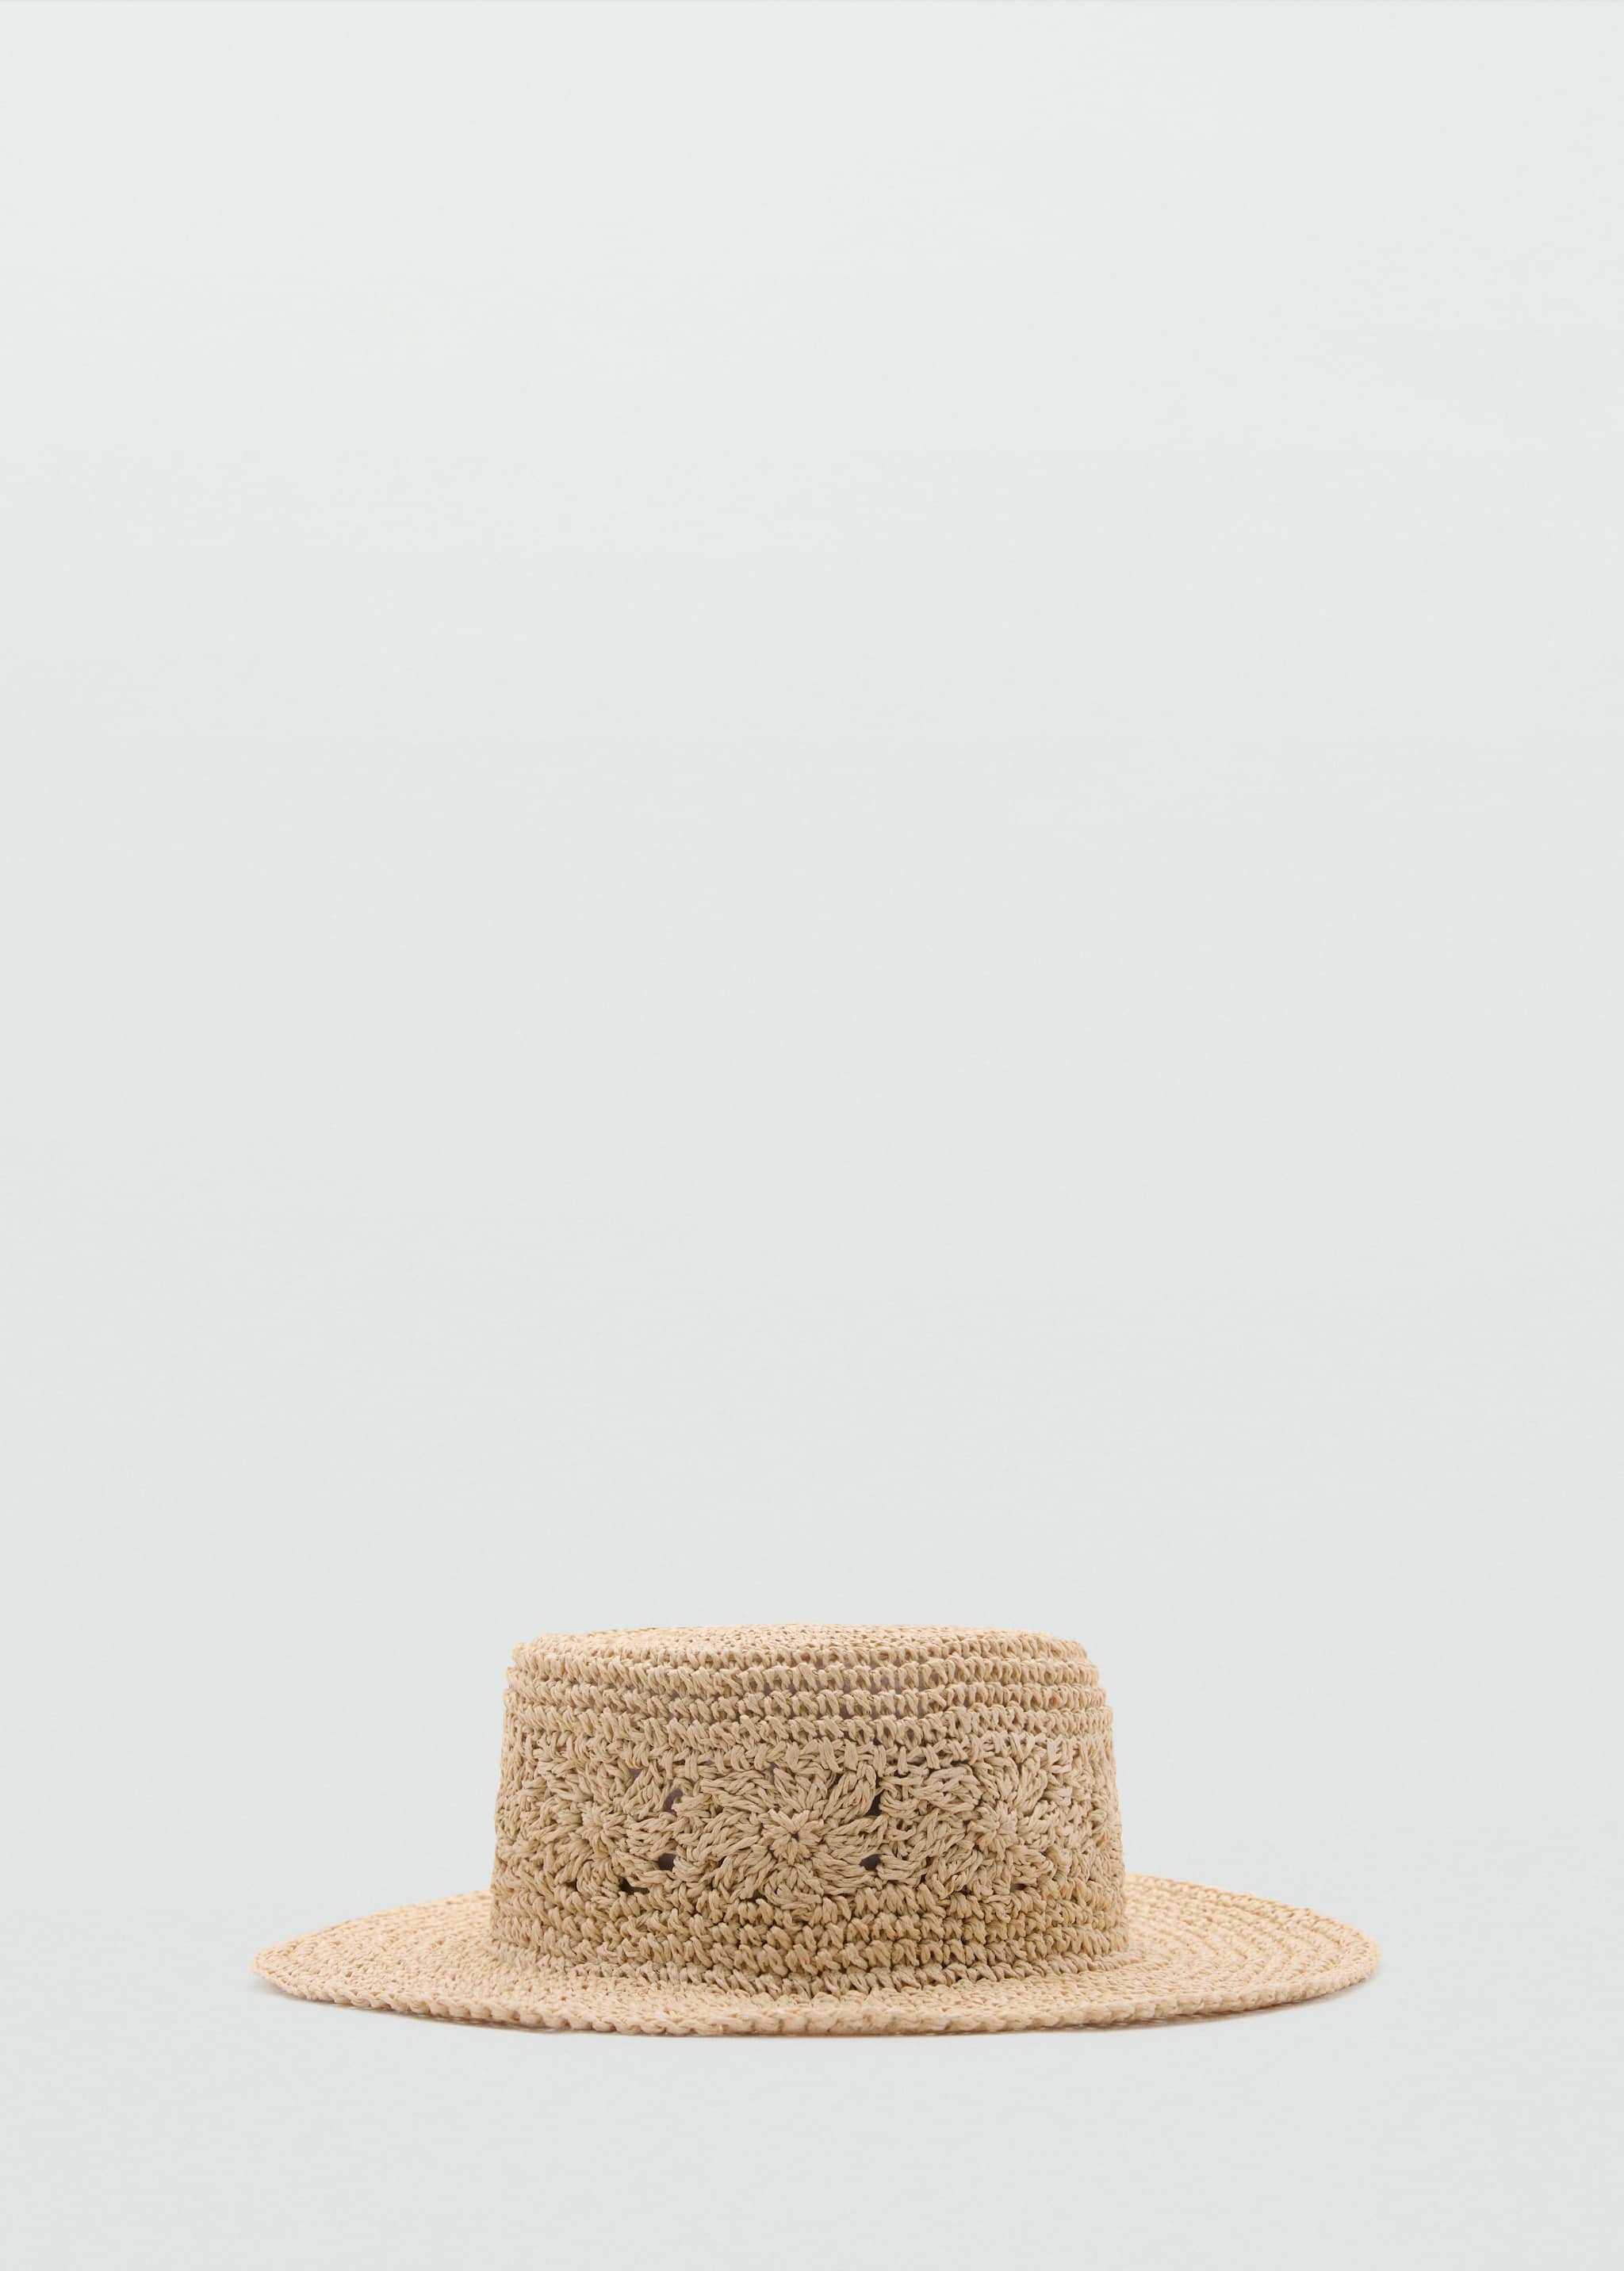 Chapeau fibre naturelle - Article sans modèle